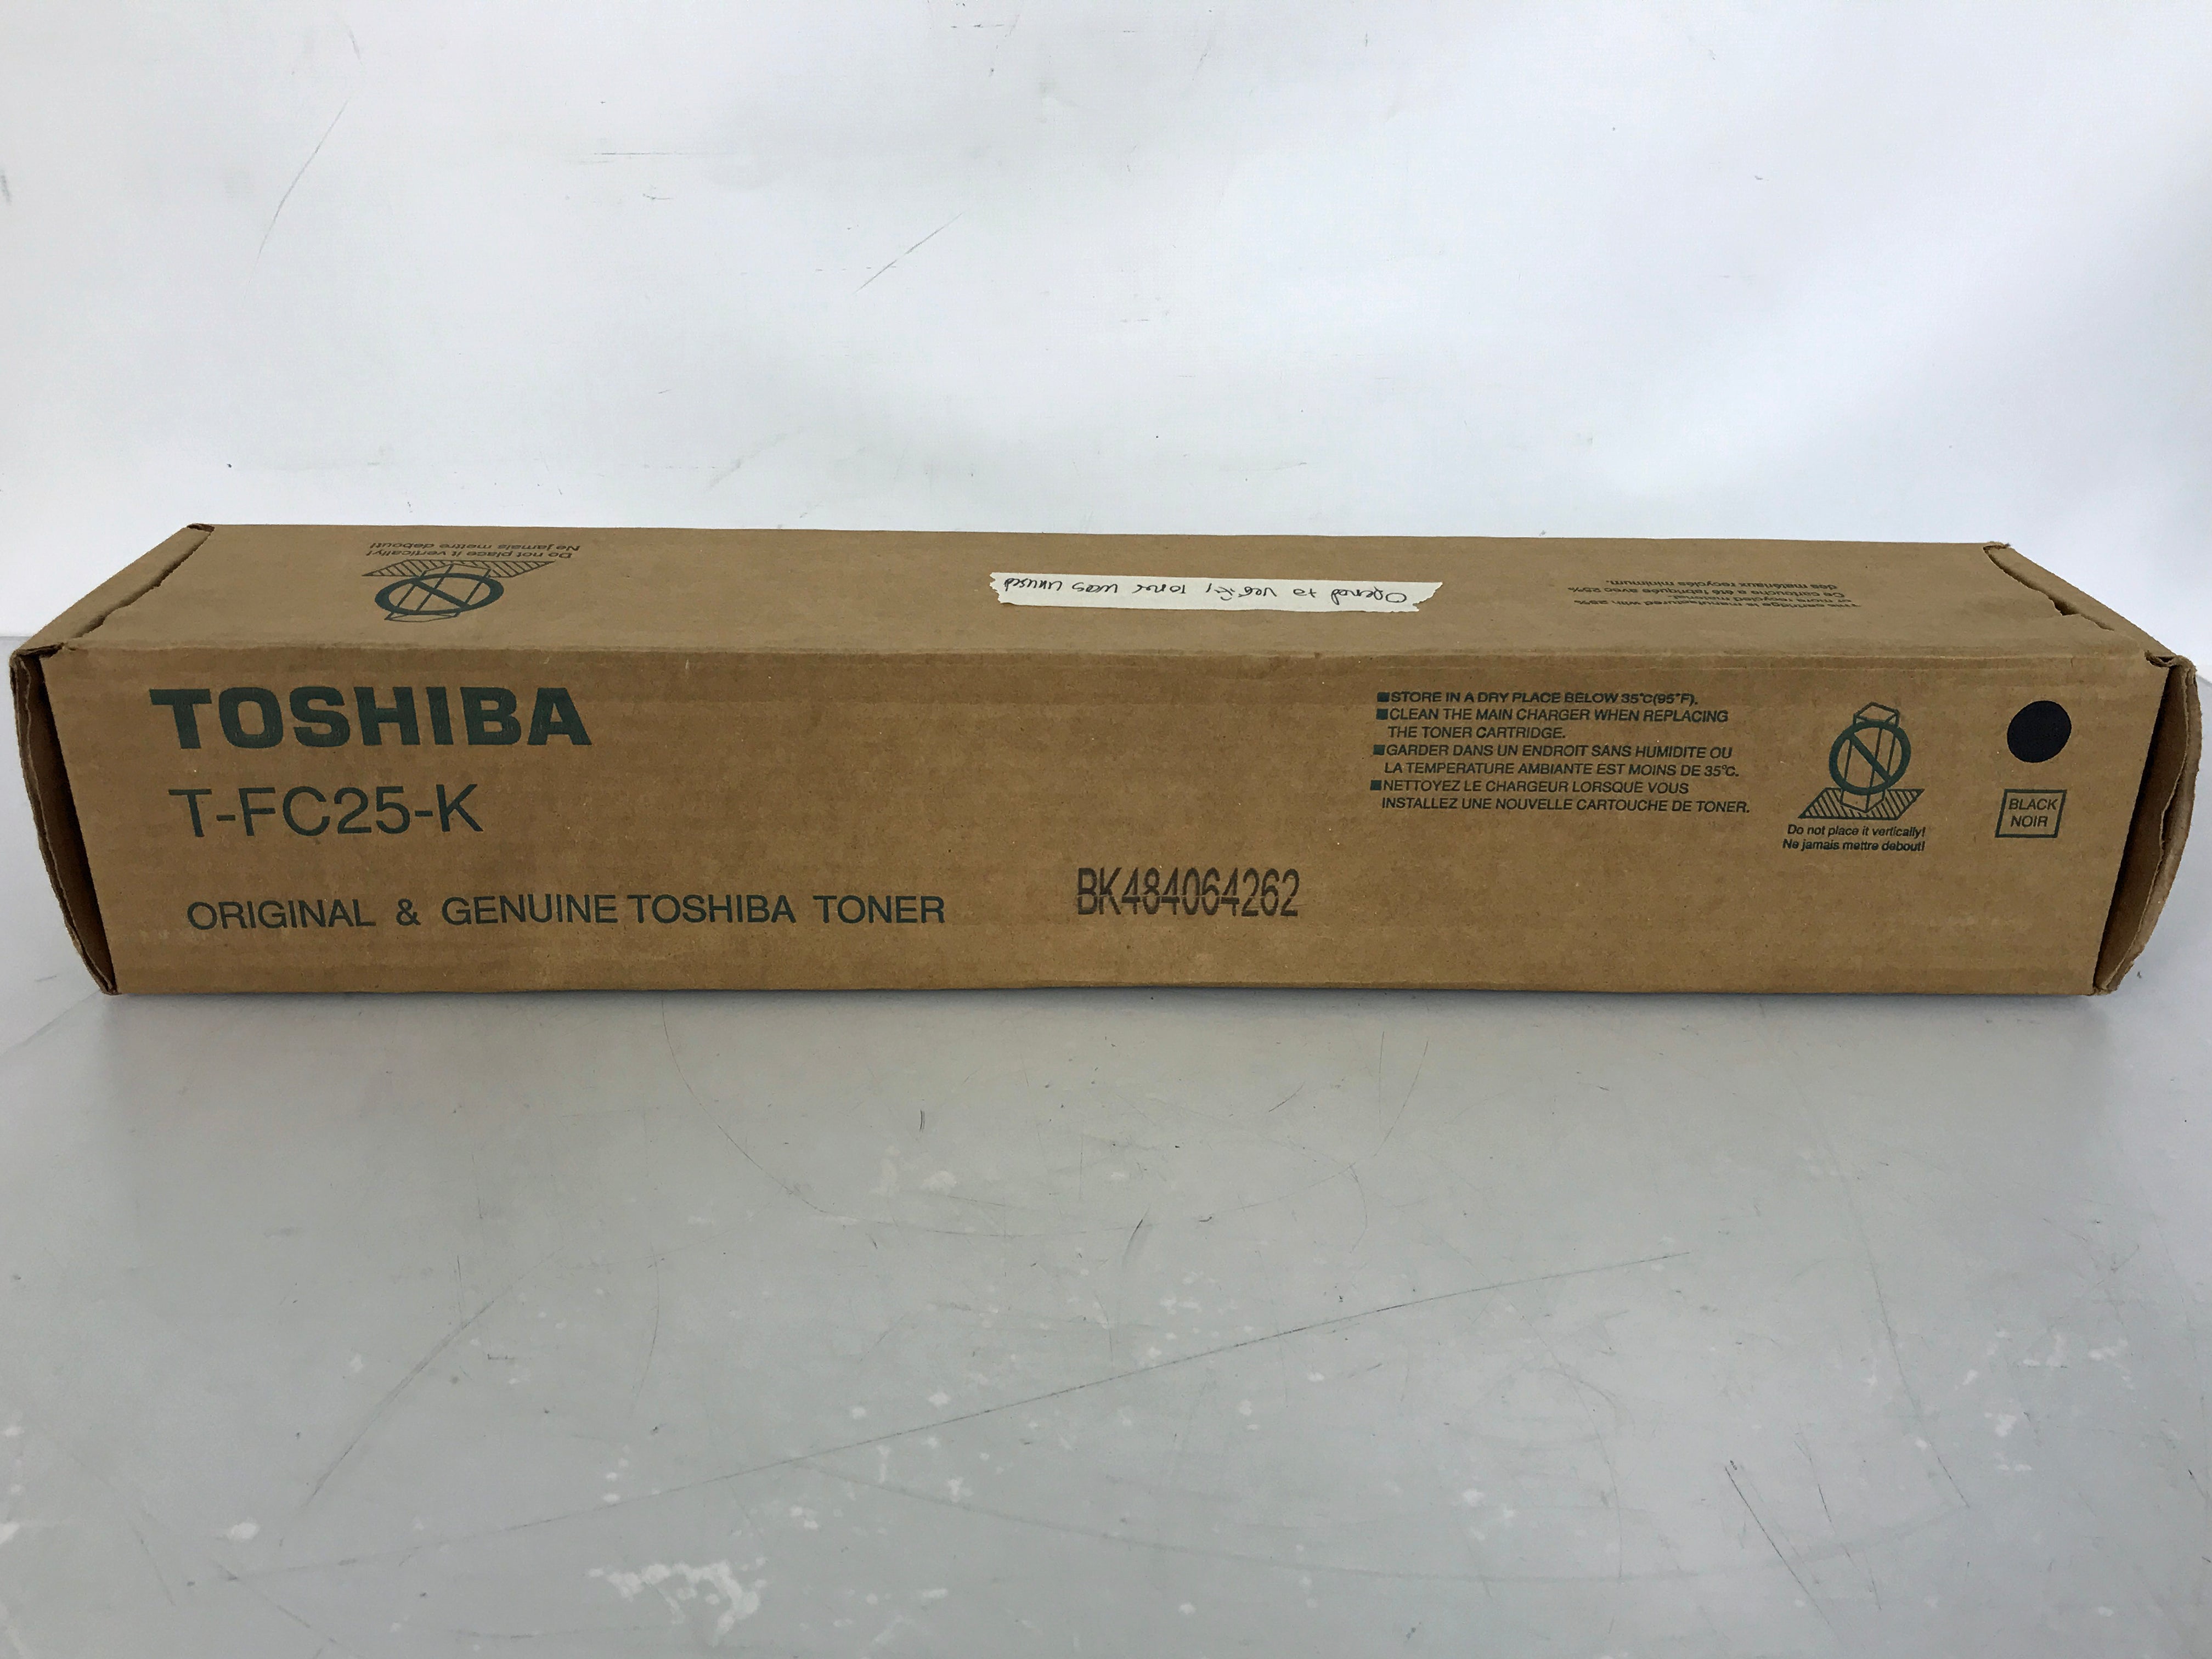 Toshiba T-FC25-K Black Toner Cartridge